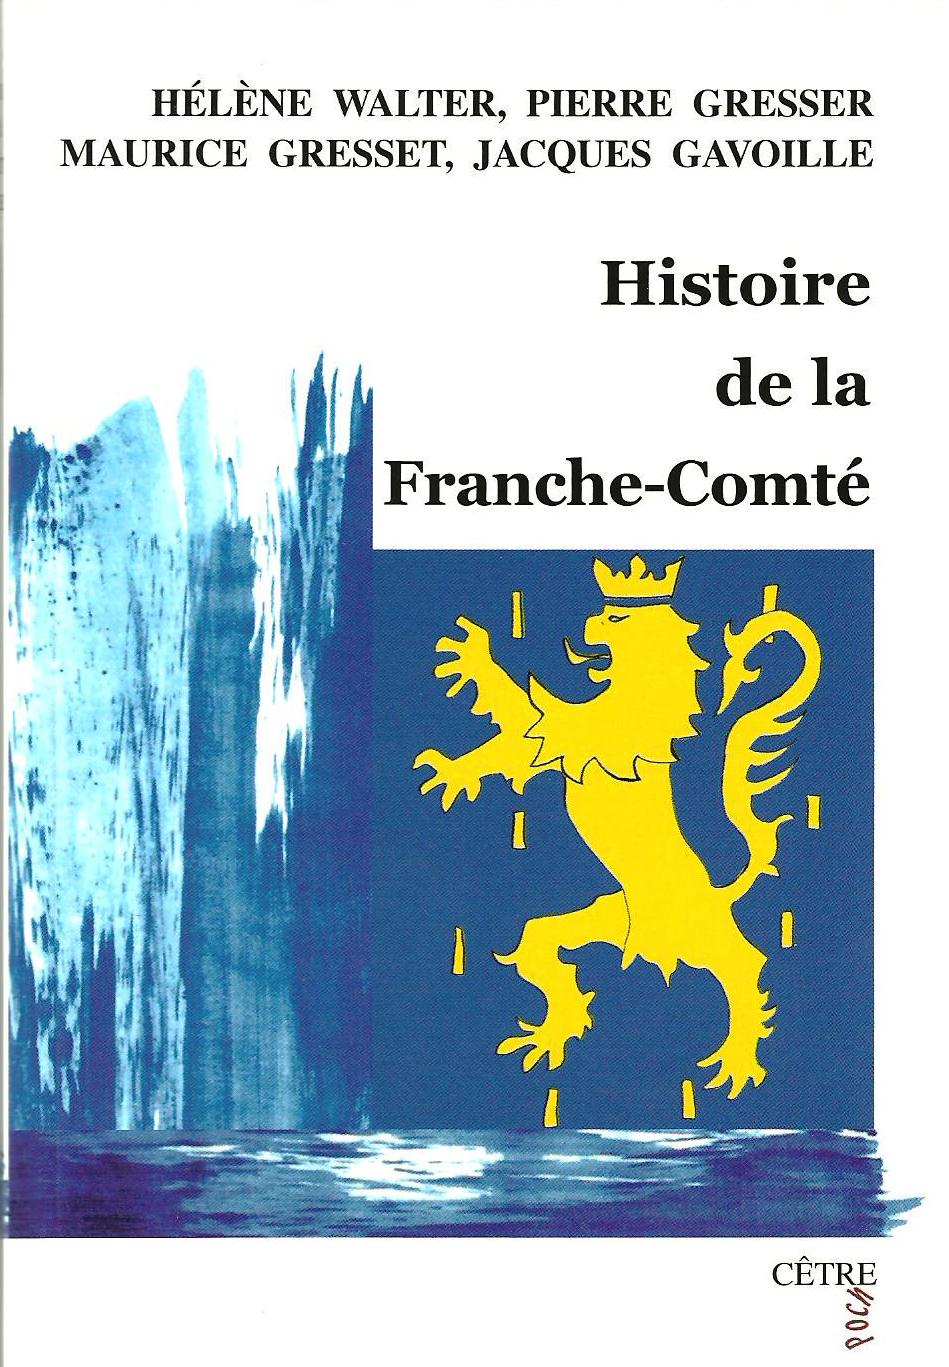 HISTOIRE DE LA FRANCHE-COMTÉ